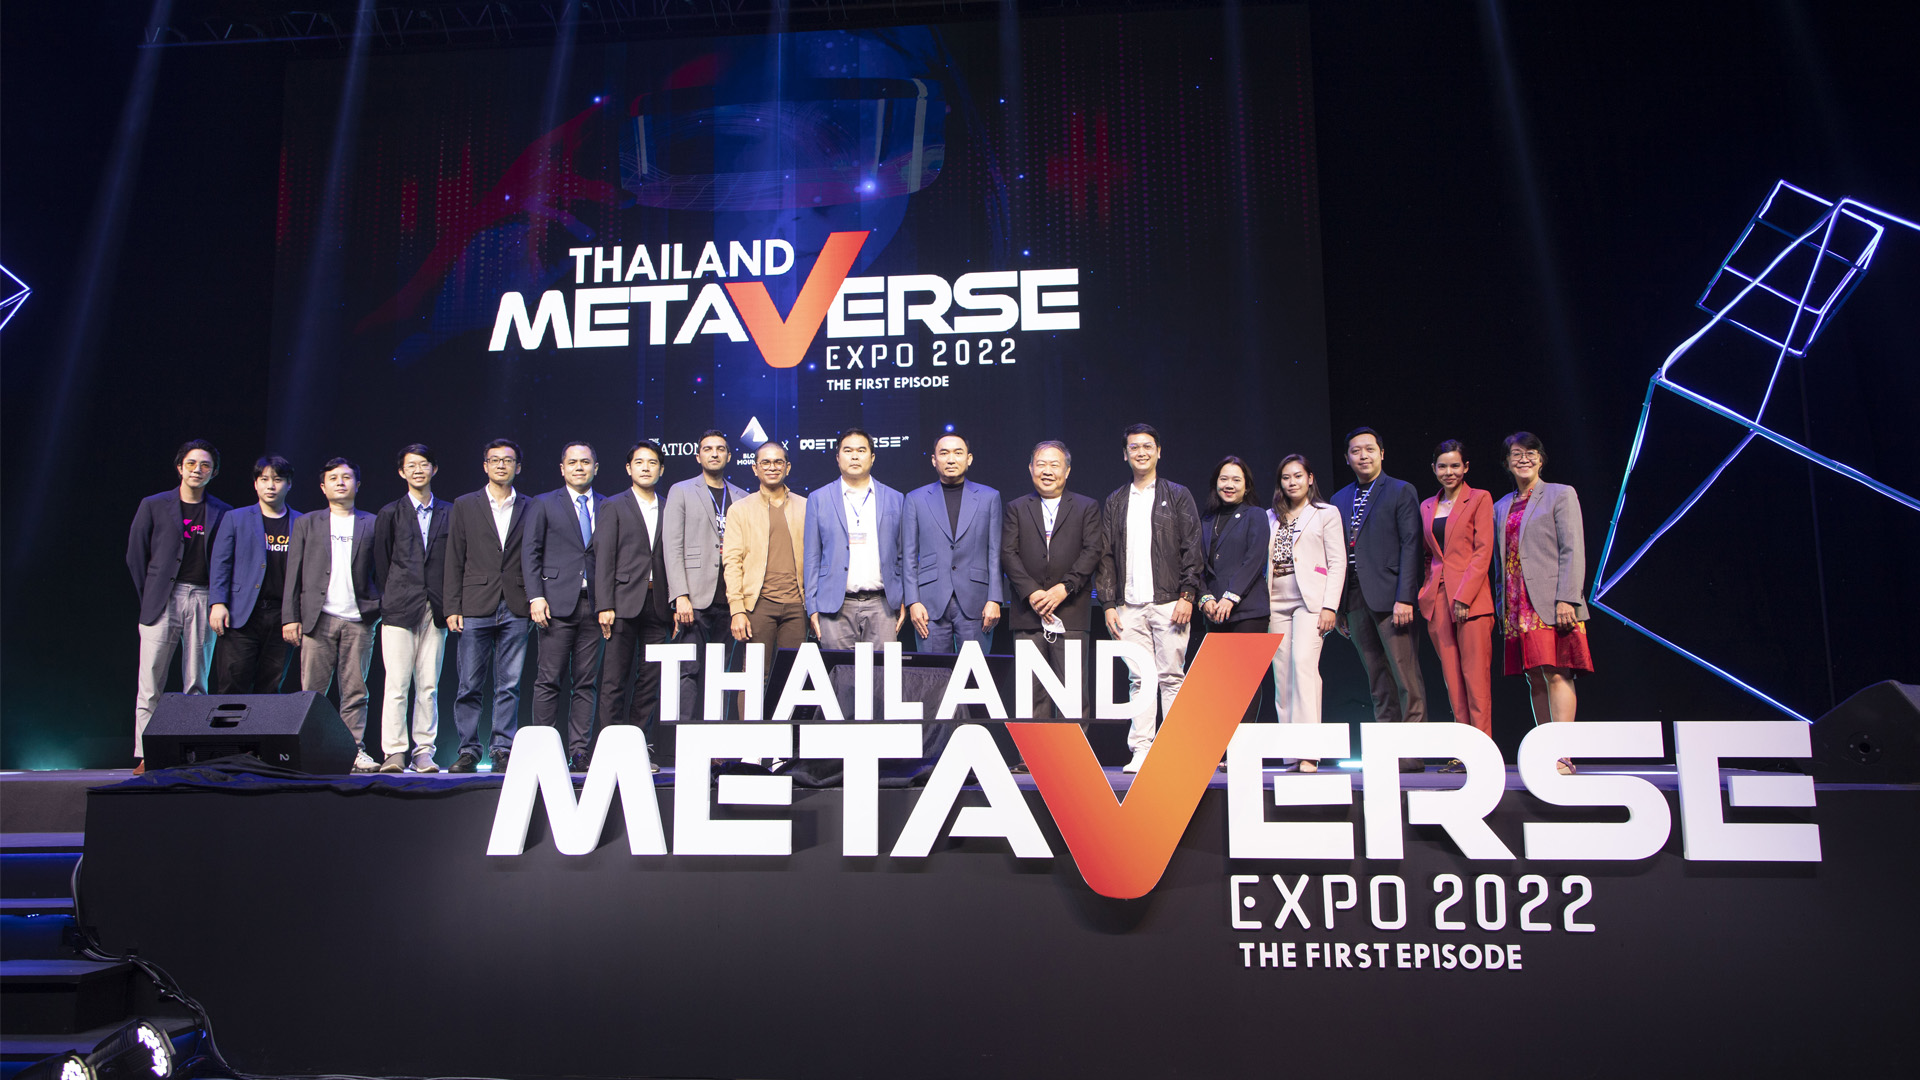 เปิดตัวคึกคัก Thailand Metaverse Expo 2022 ครั้งแรกในไทยพลิกโลกเสมือนจริง